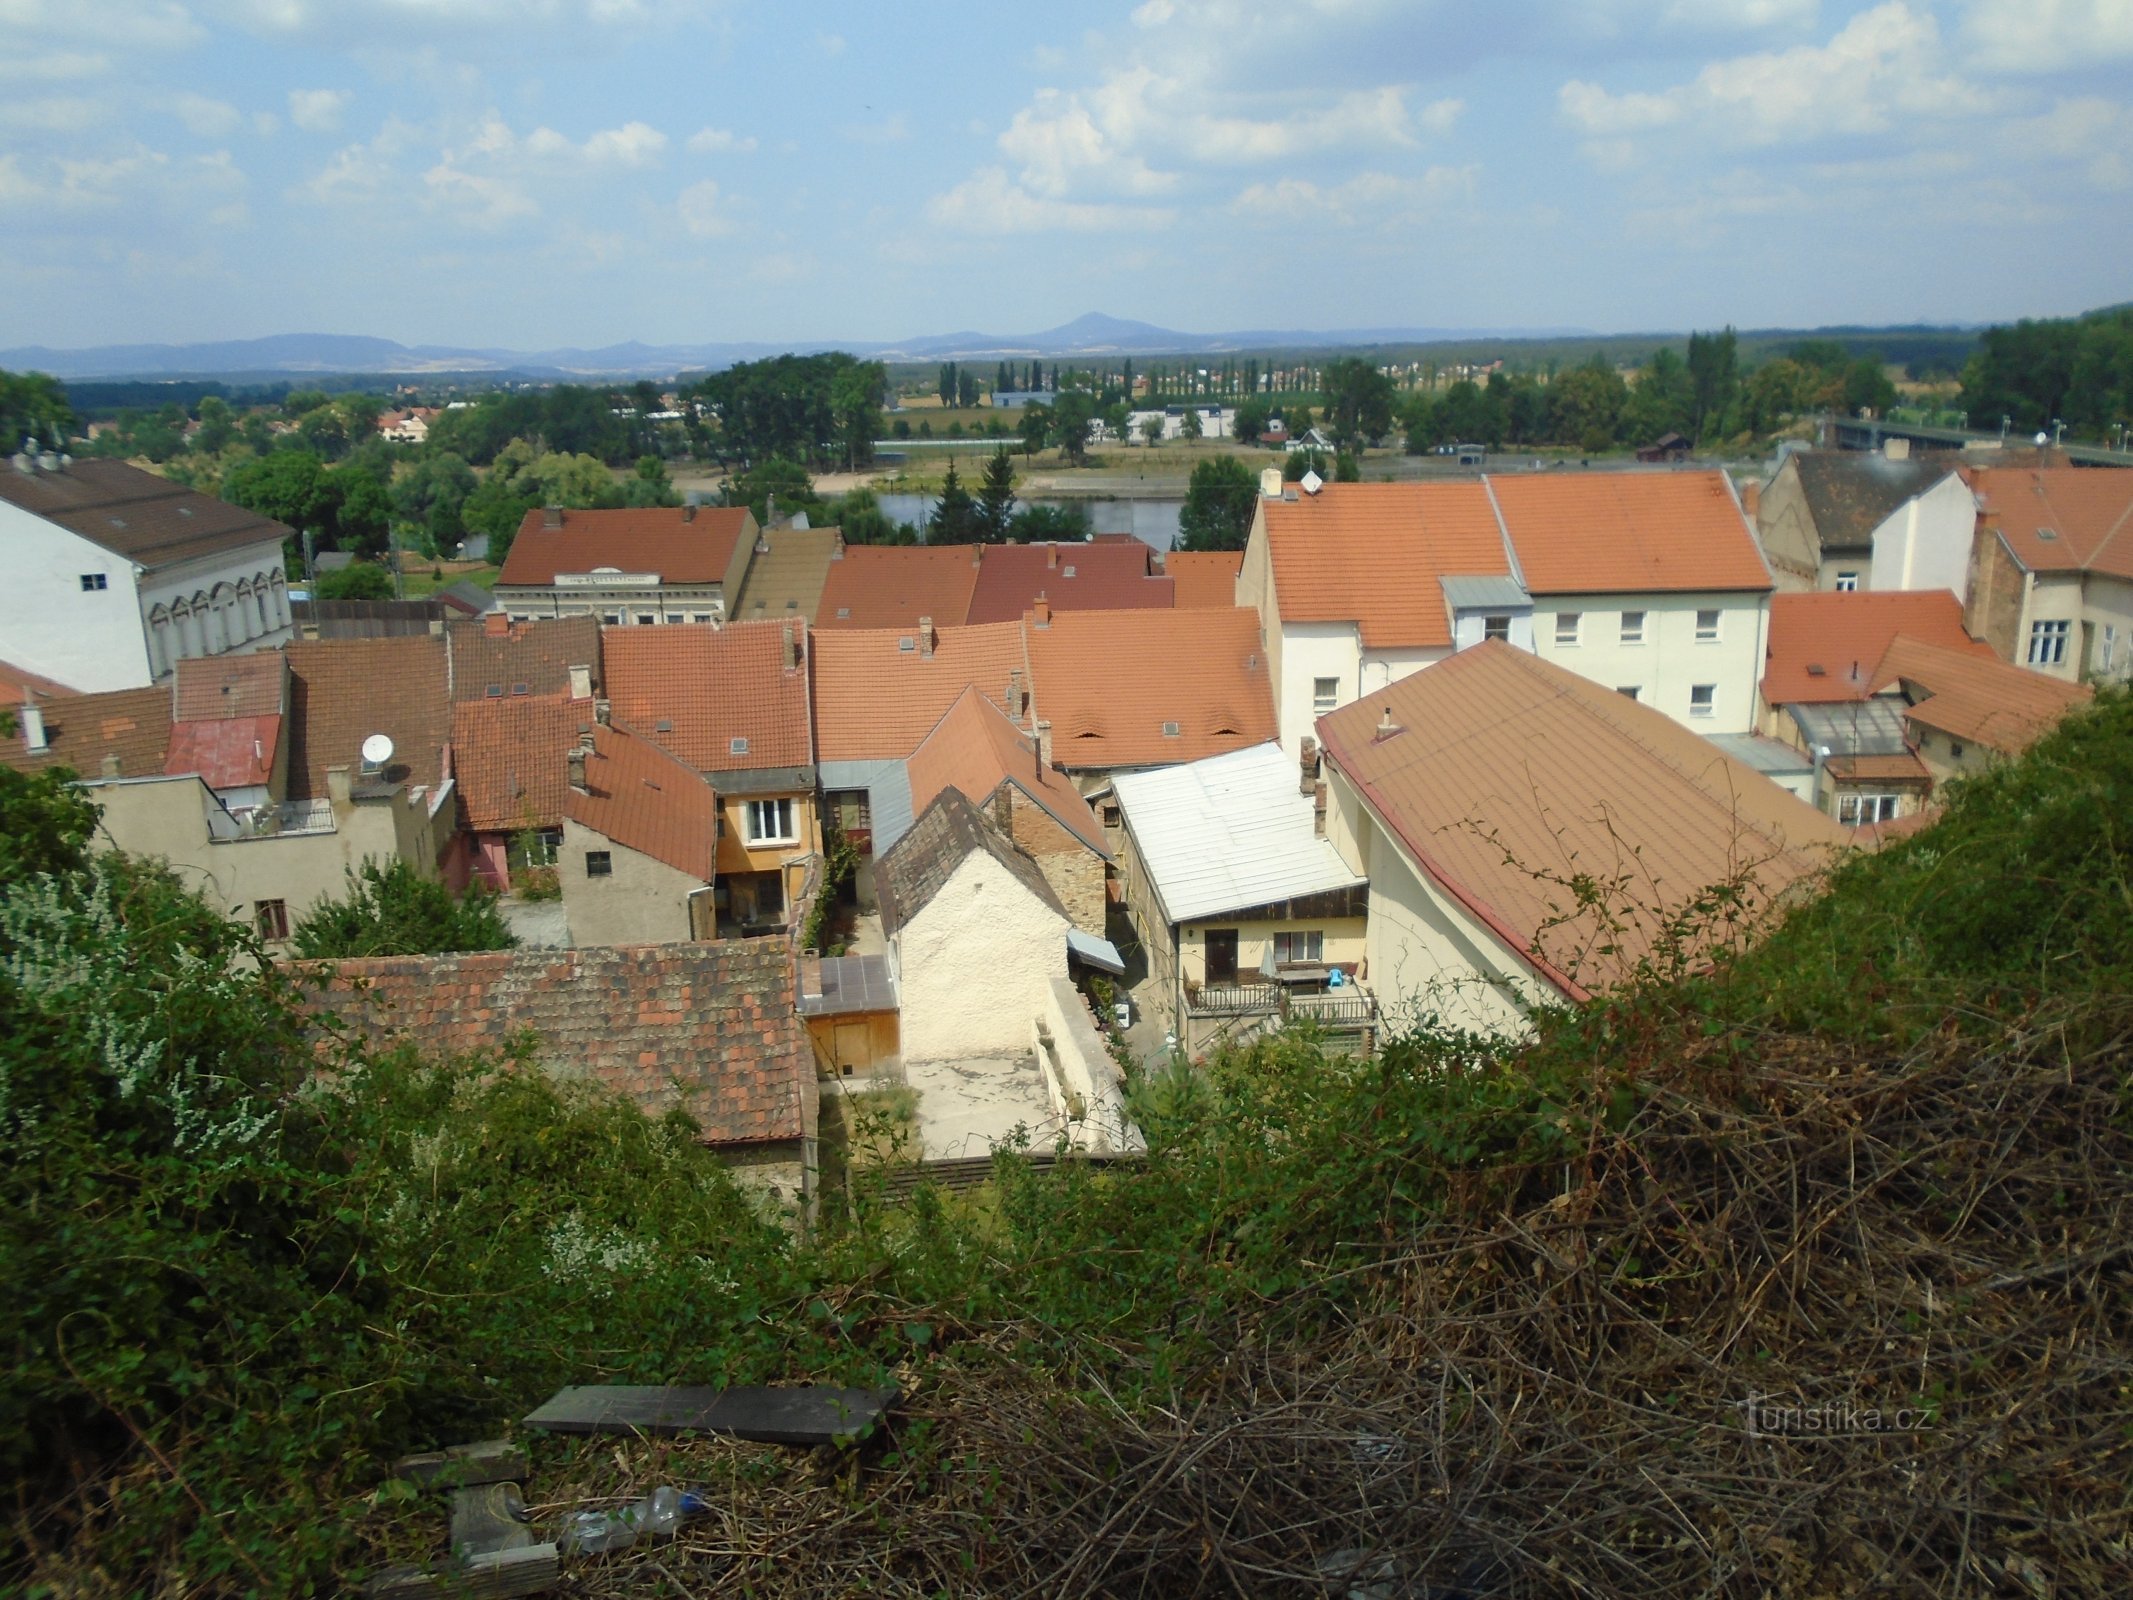 Kilátás a Hláskáról (Roudnice nad Labem)